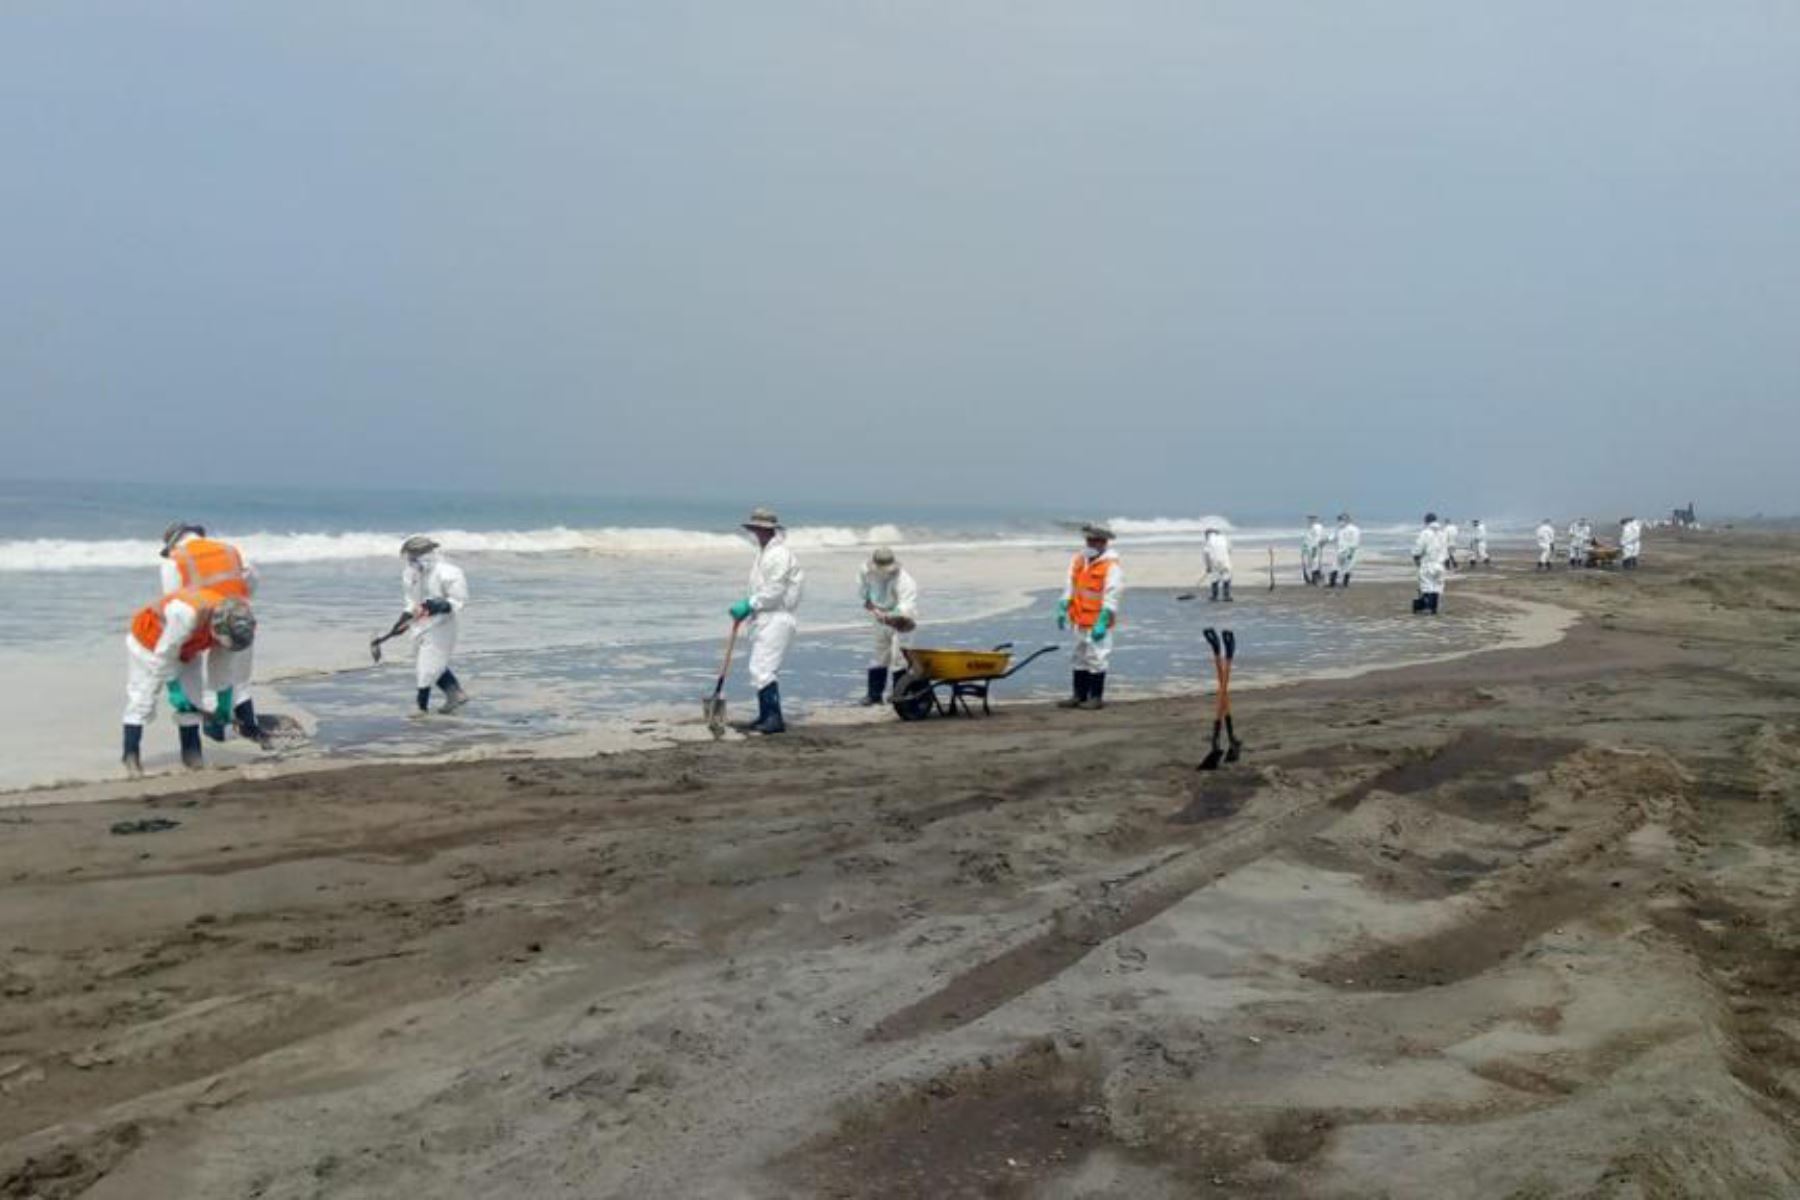 Provincia limeña de Huaura está en alerta y monitoreo permanente por desastre ecológico en el mar a causa del derrame de petróleo. Foto: ANDINA/Difusión.